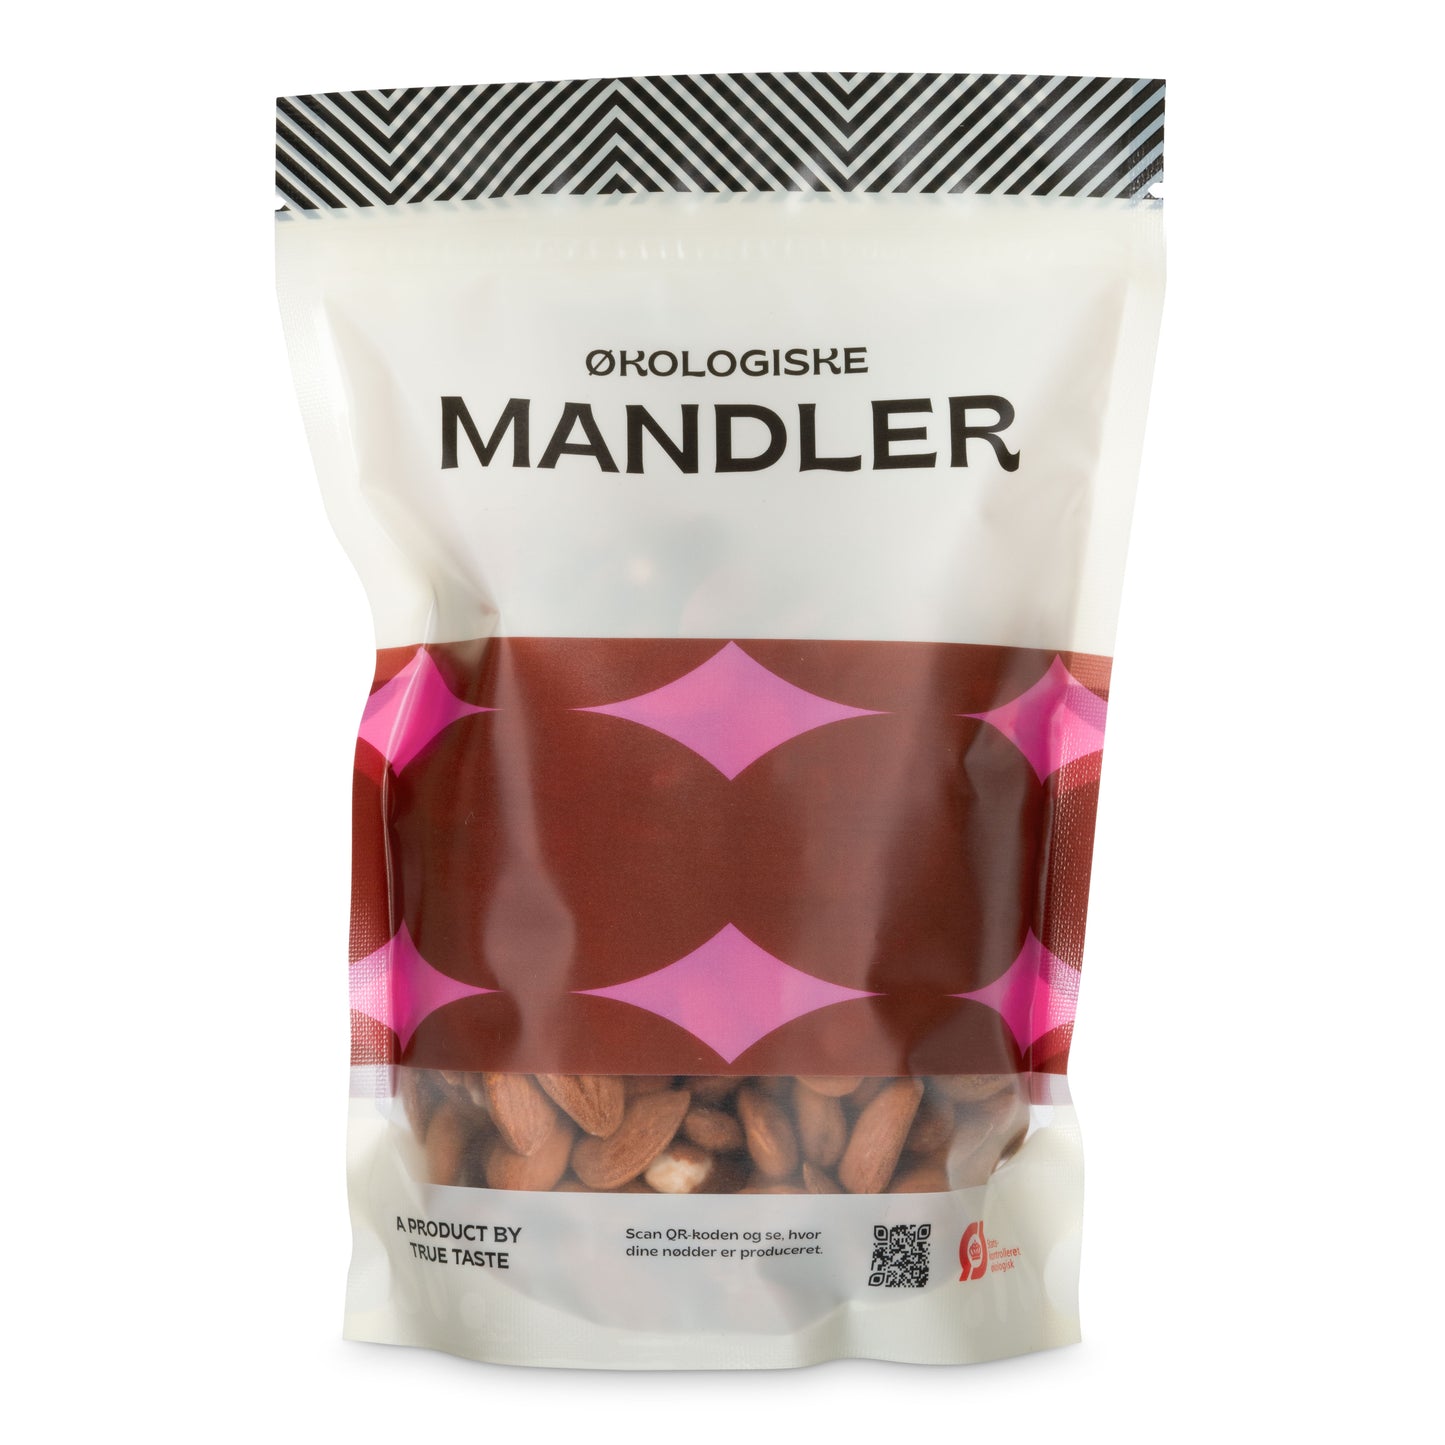 Mandler x Truely Taste